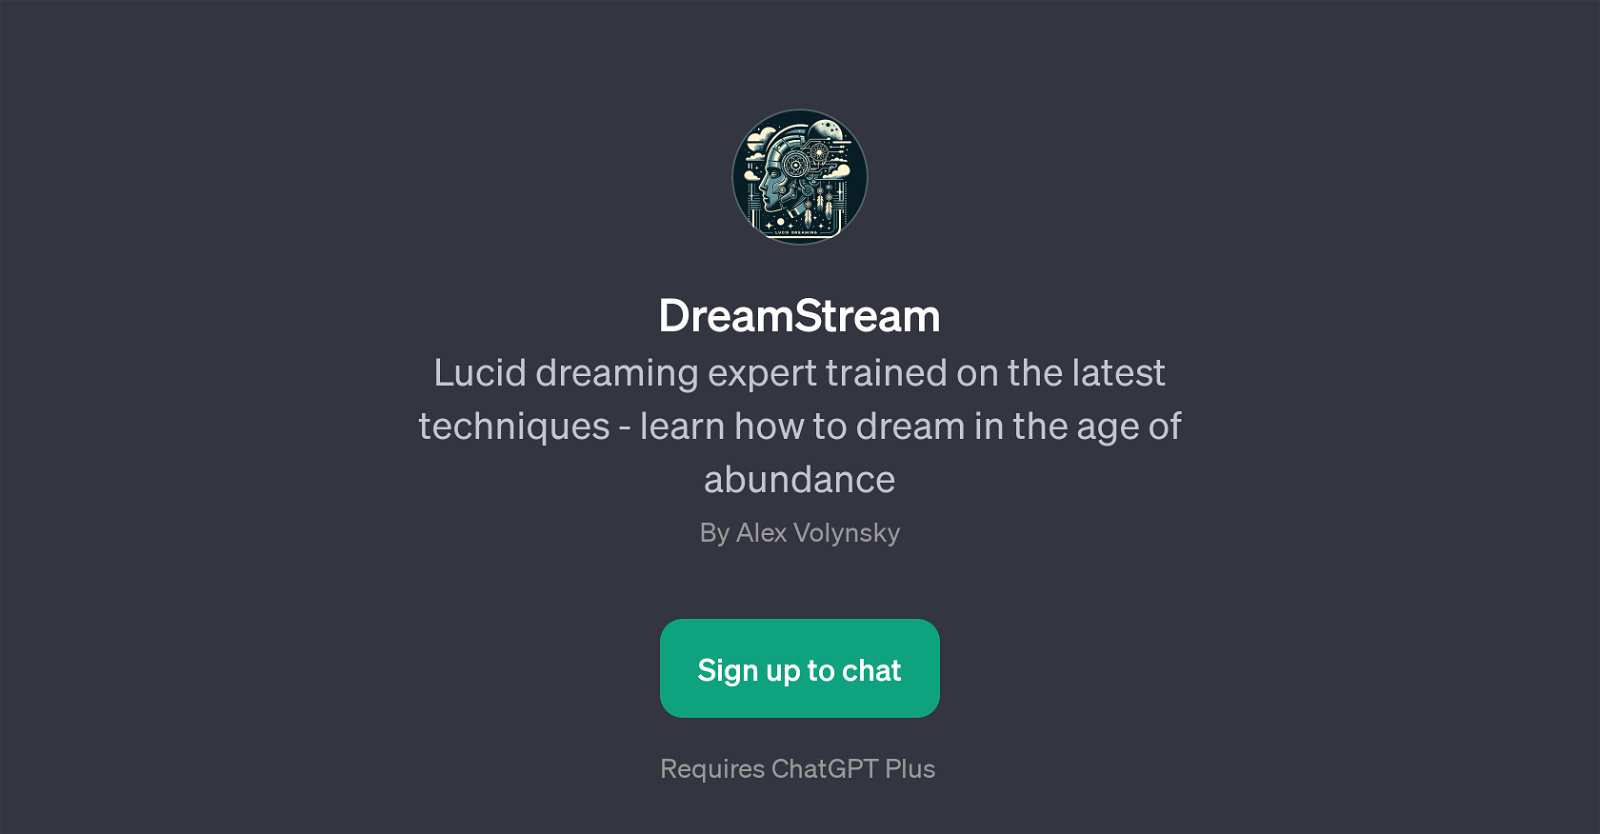 DreamStream website